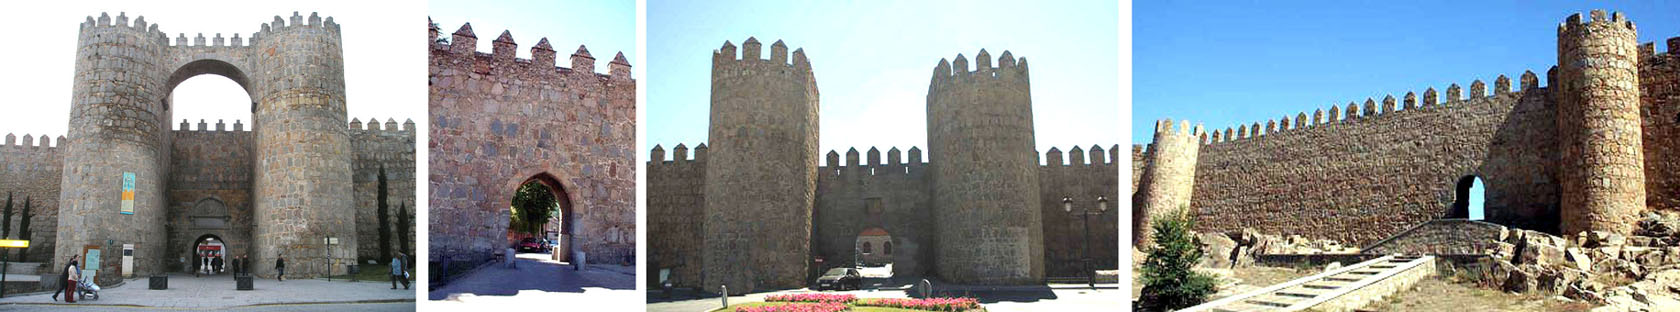 Puertas de Ávila 0